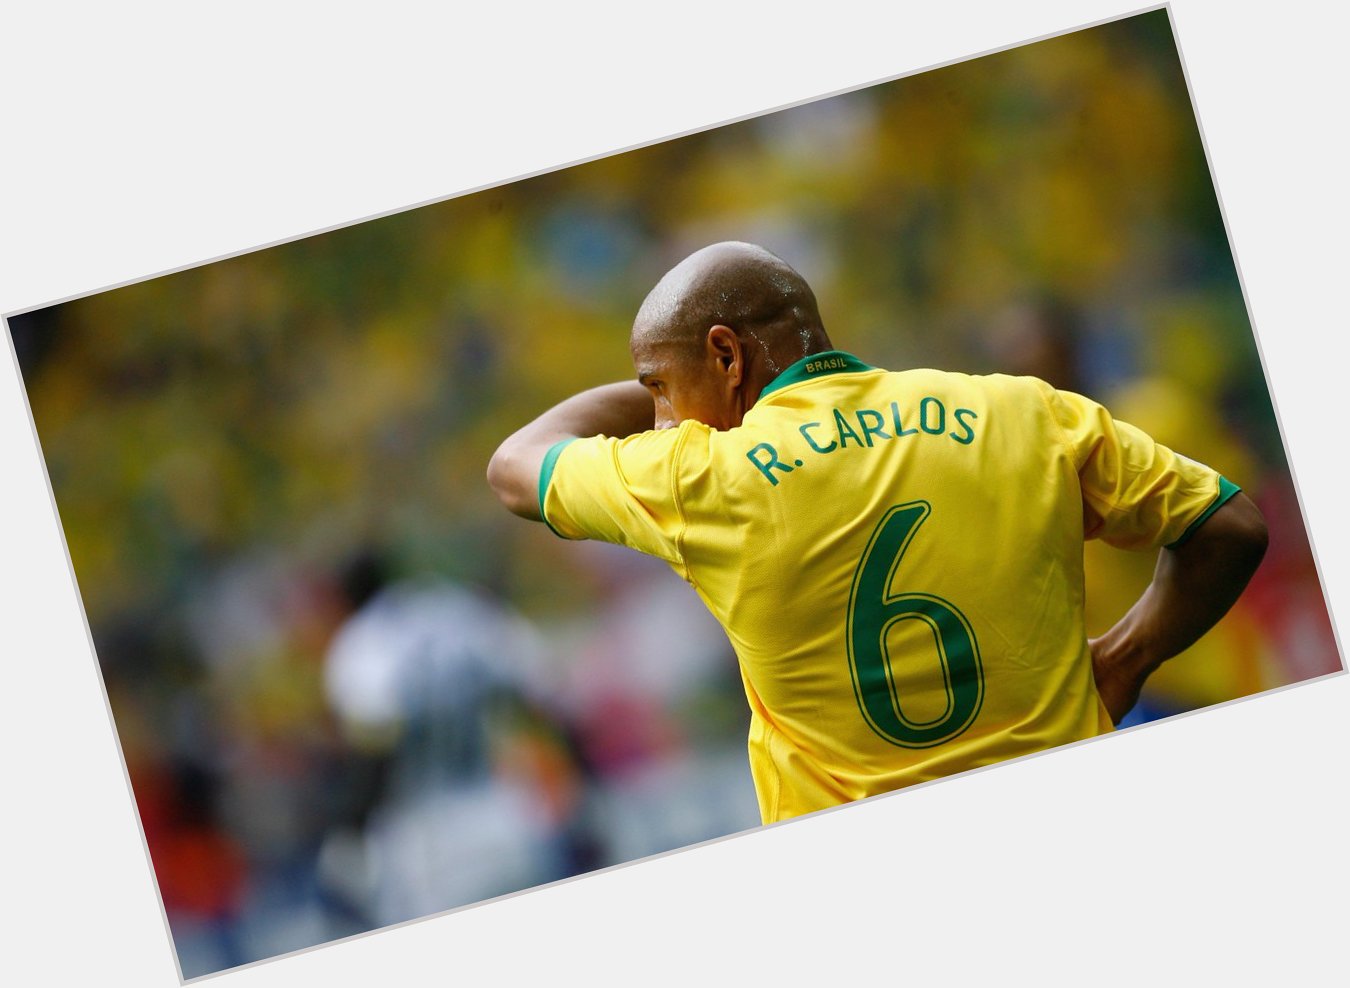   La Liga      UCL     Copa América   World Cup  That free-kick Happy birthday, Roberto Carlos. 